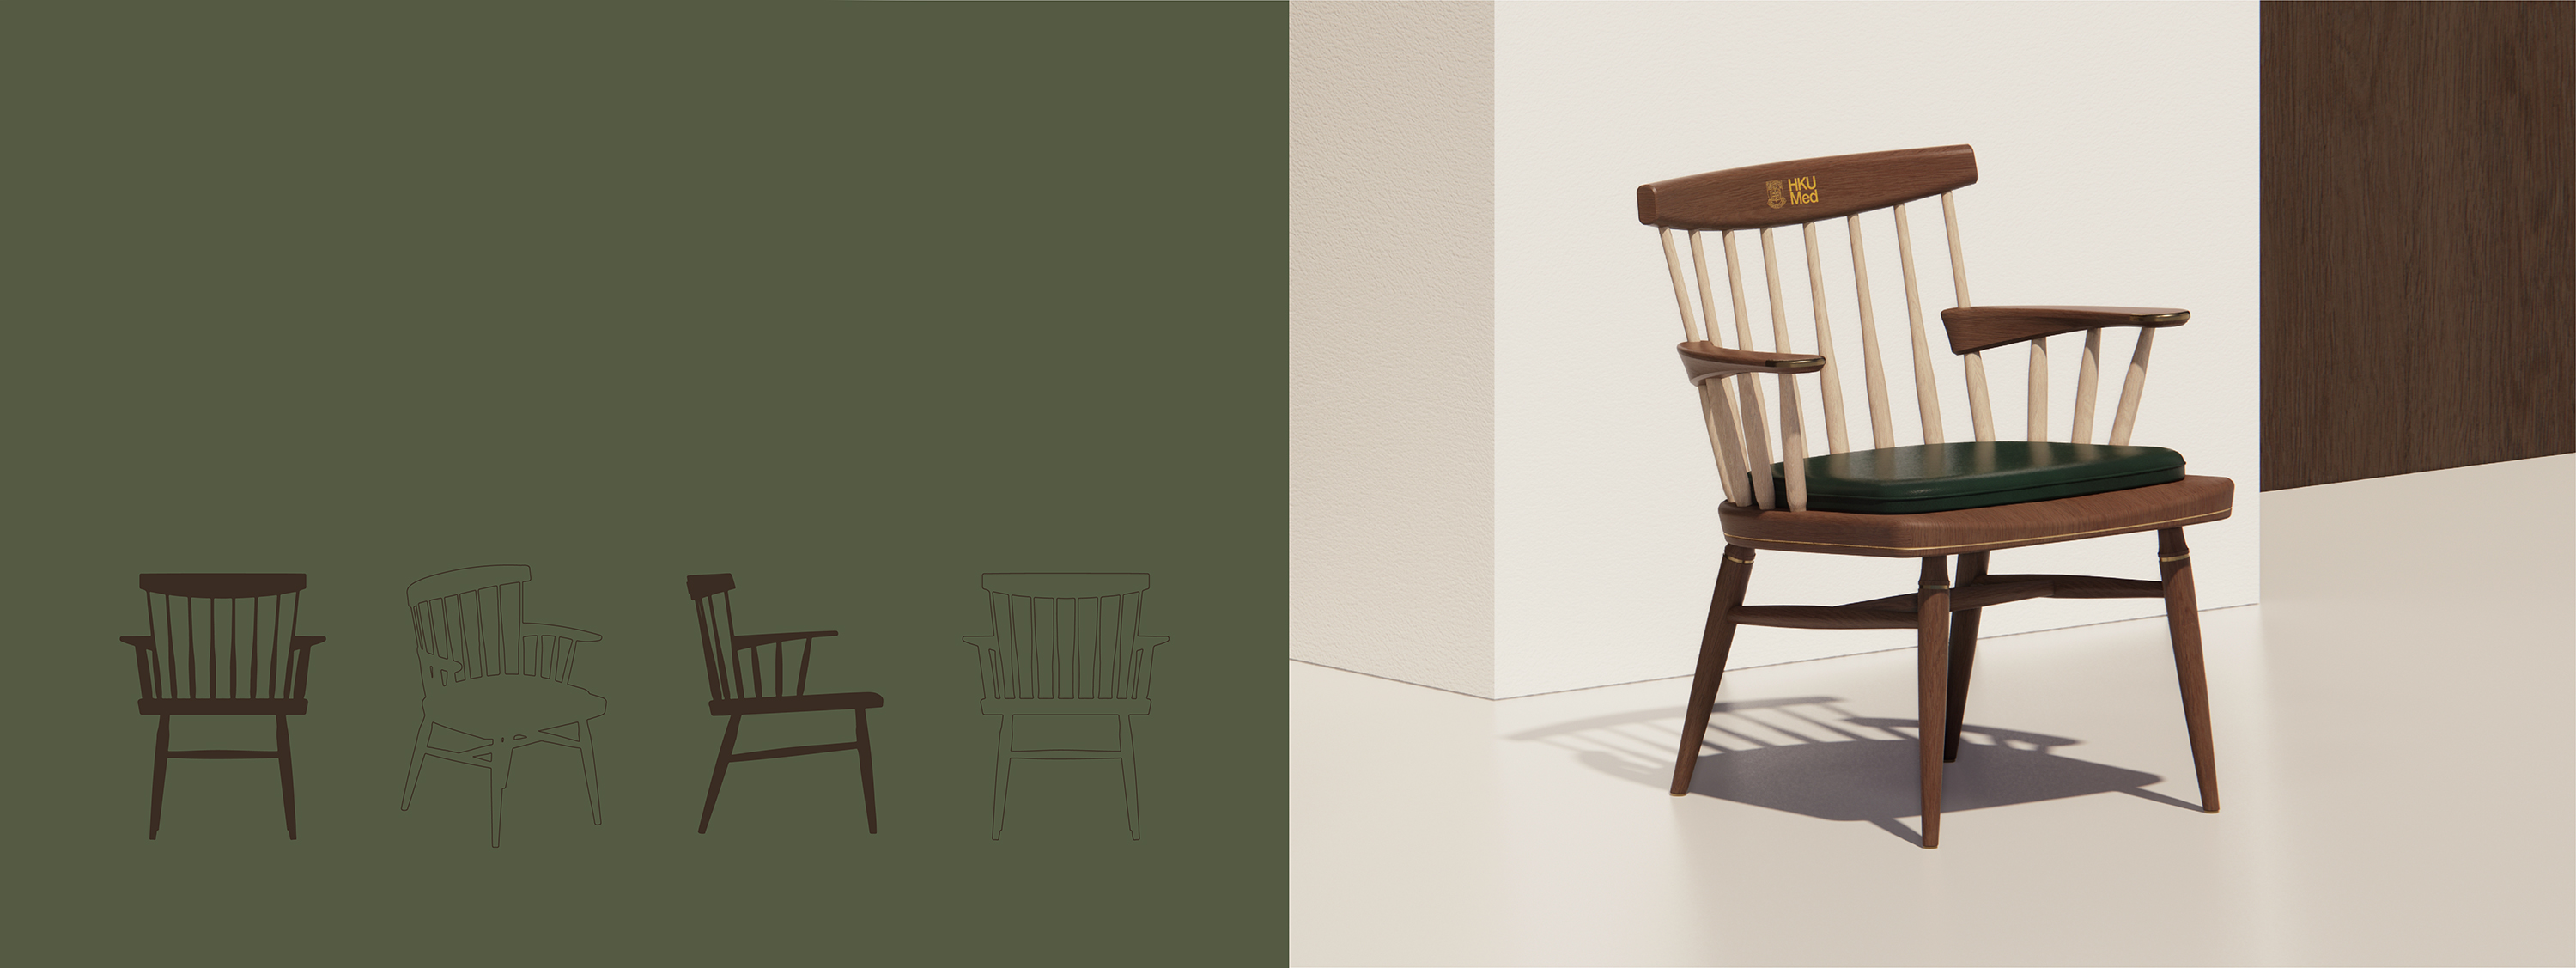 HKUMed Chair rendering